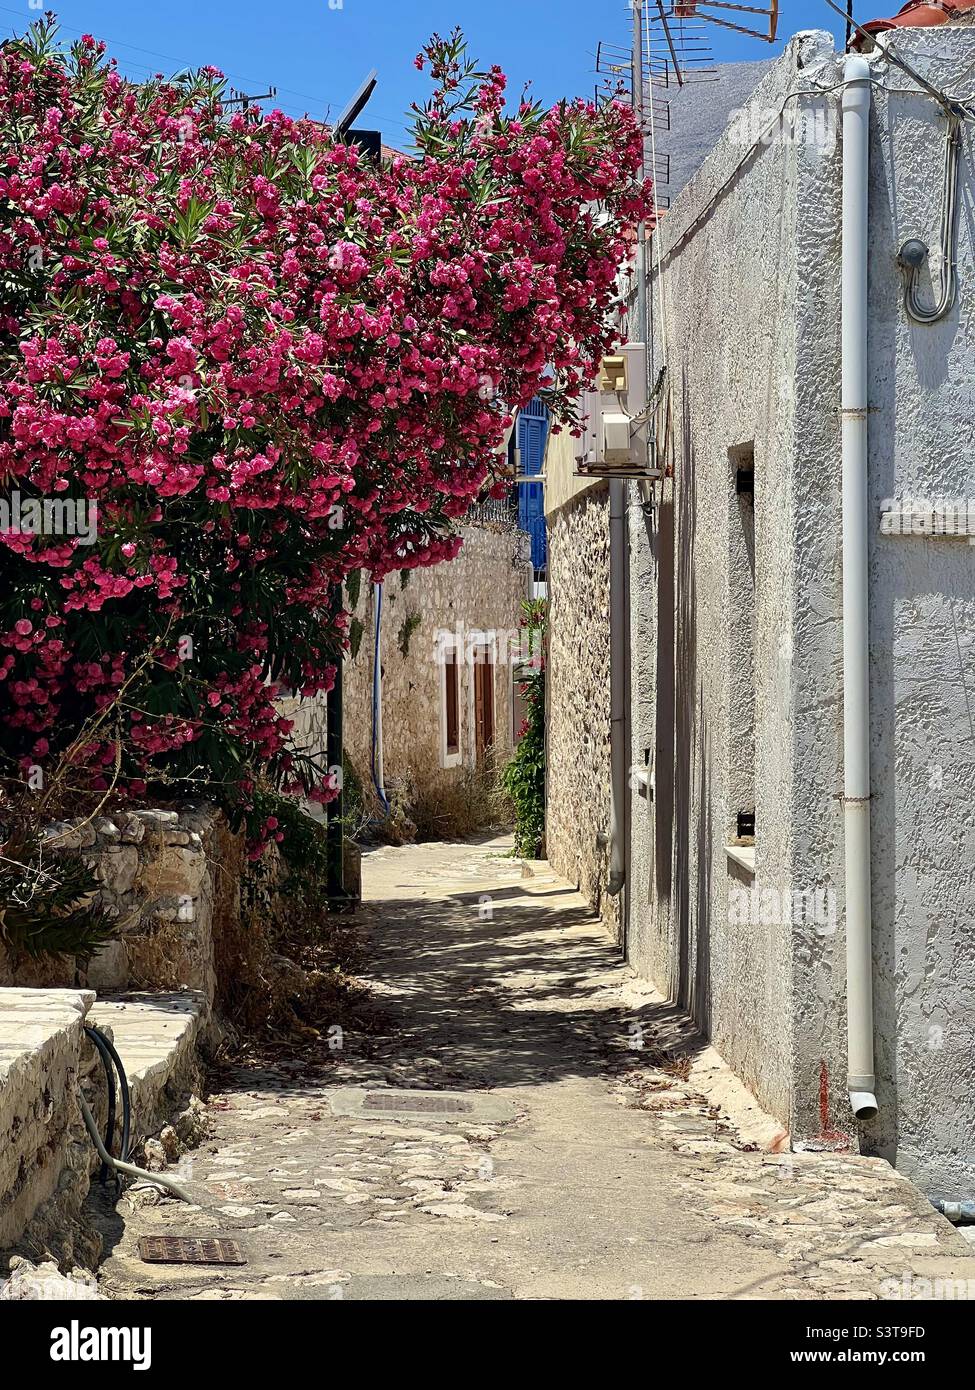 Fiori rossi appesi su una strada stretta sull'isola greca di Halki. Foto Stock